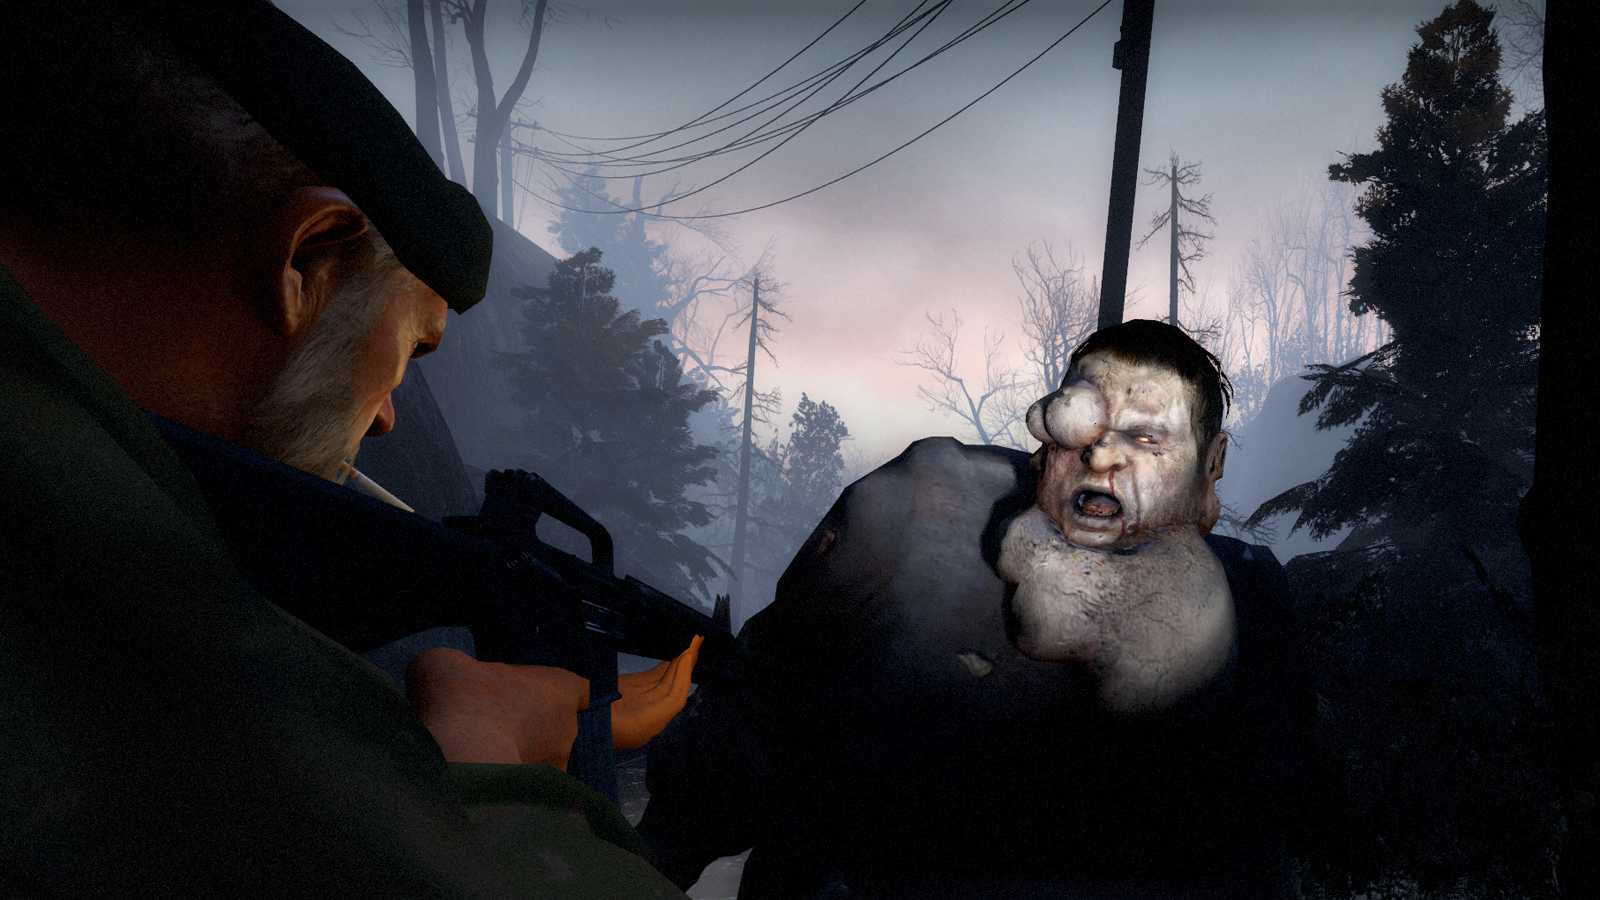 Společnosti Valve unikl raný prototyp Left 4 Dead